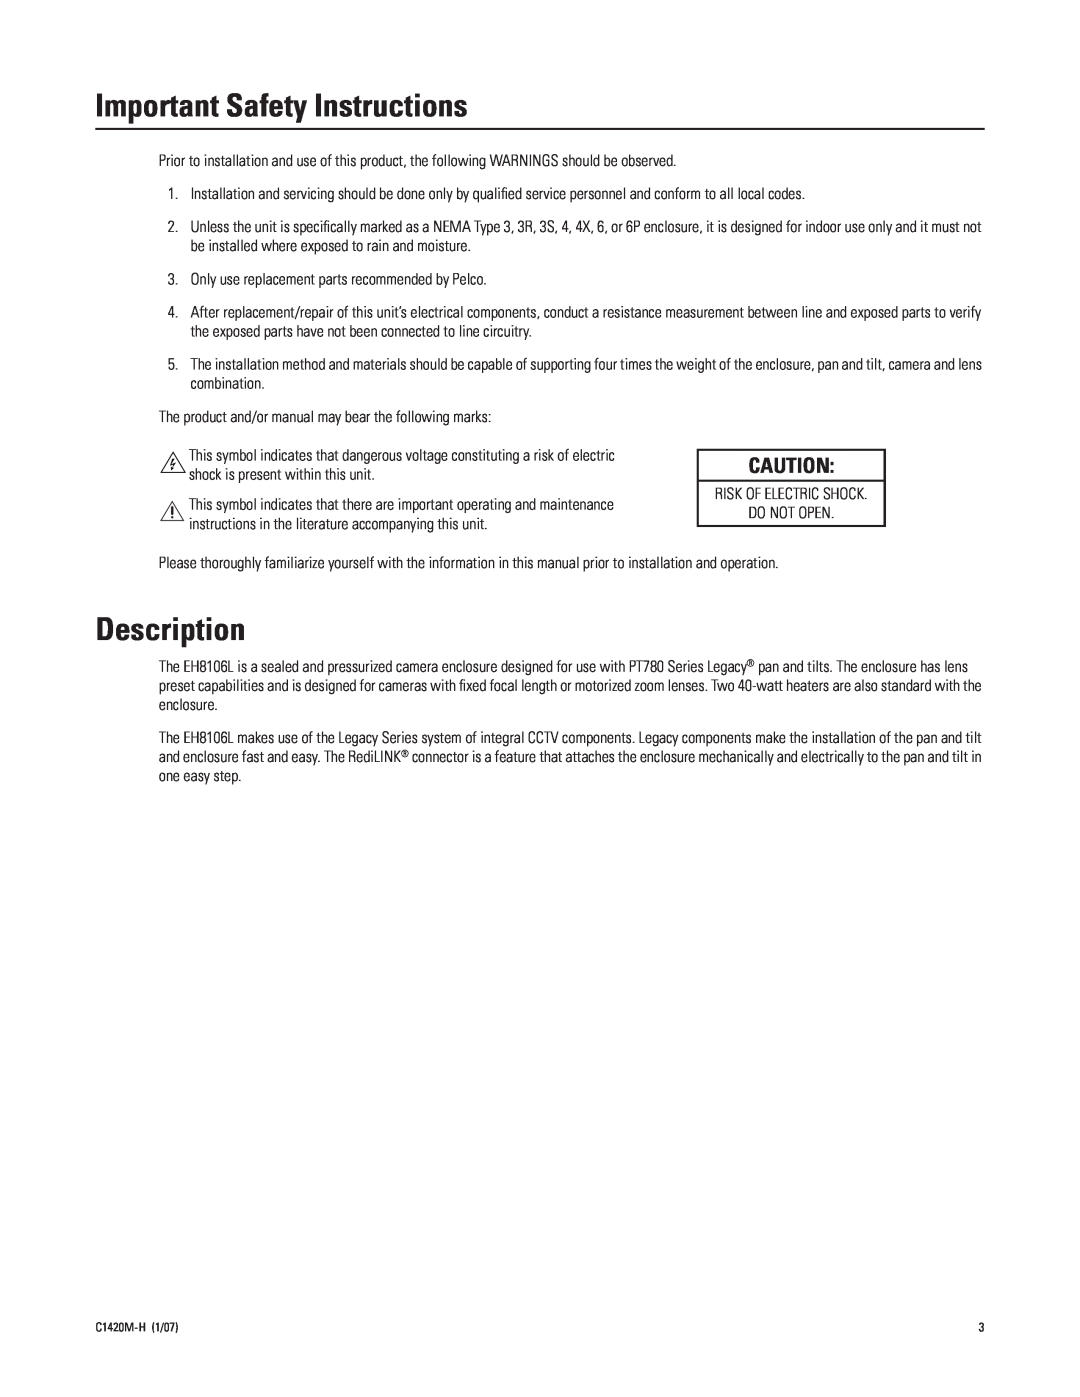 Pelco C1420M-H manual Important Safety Instructions, Description 